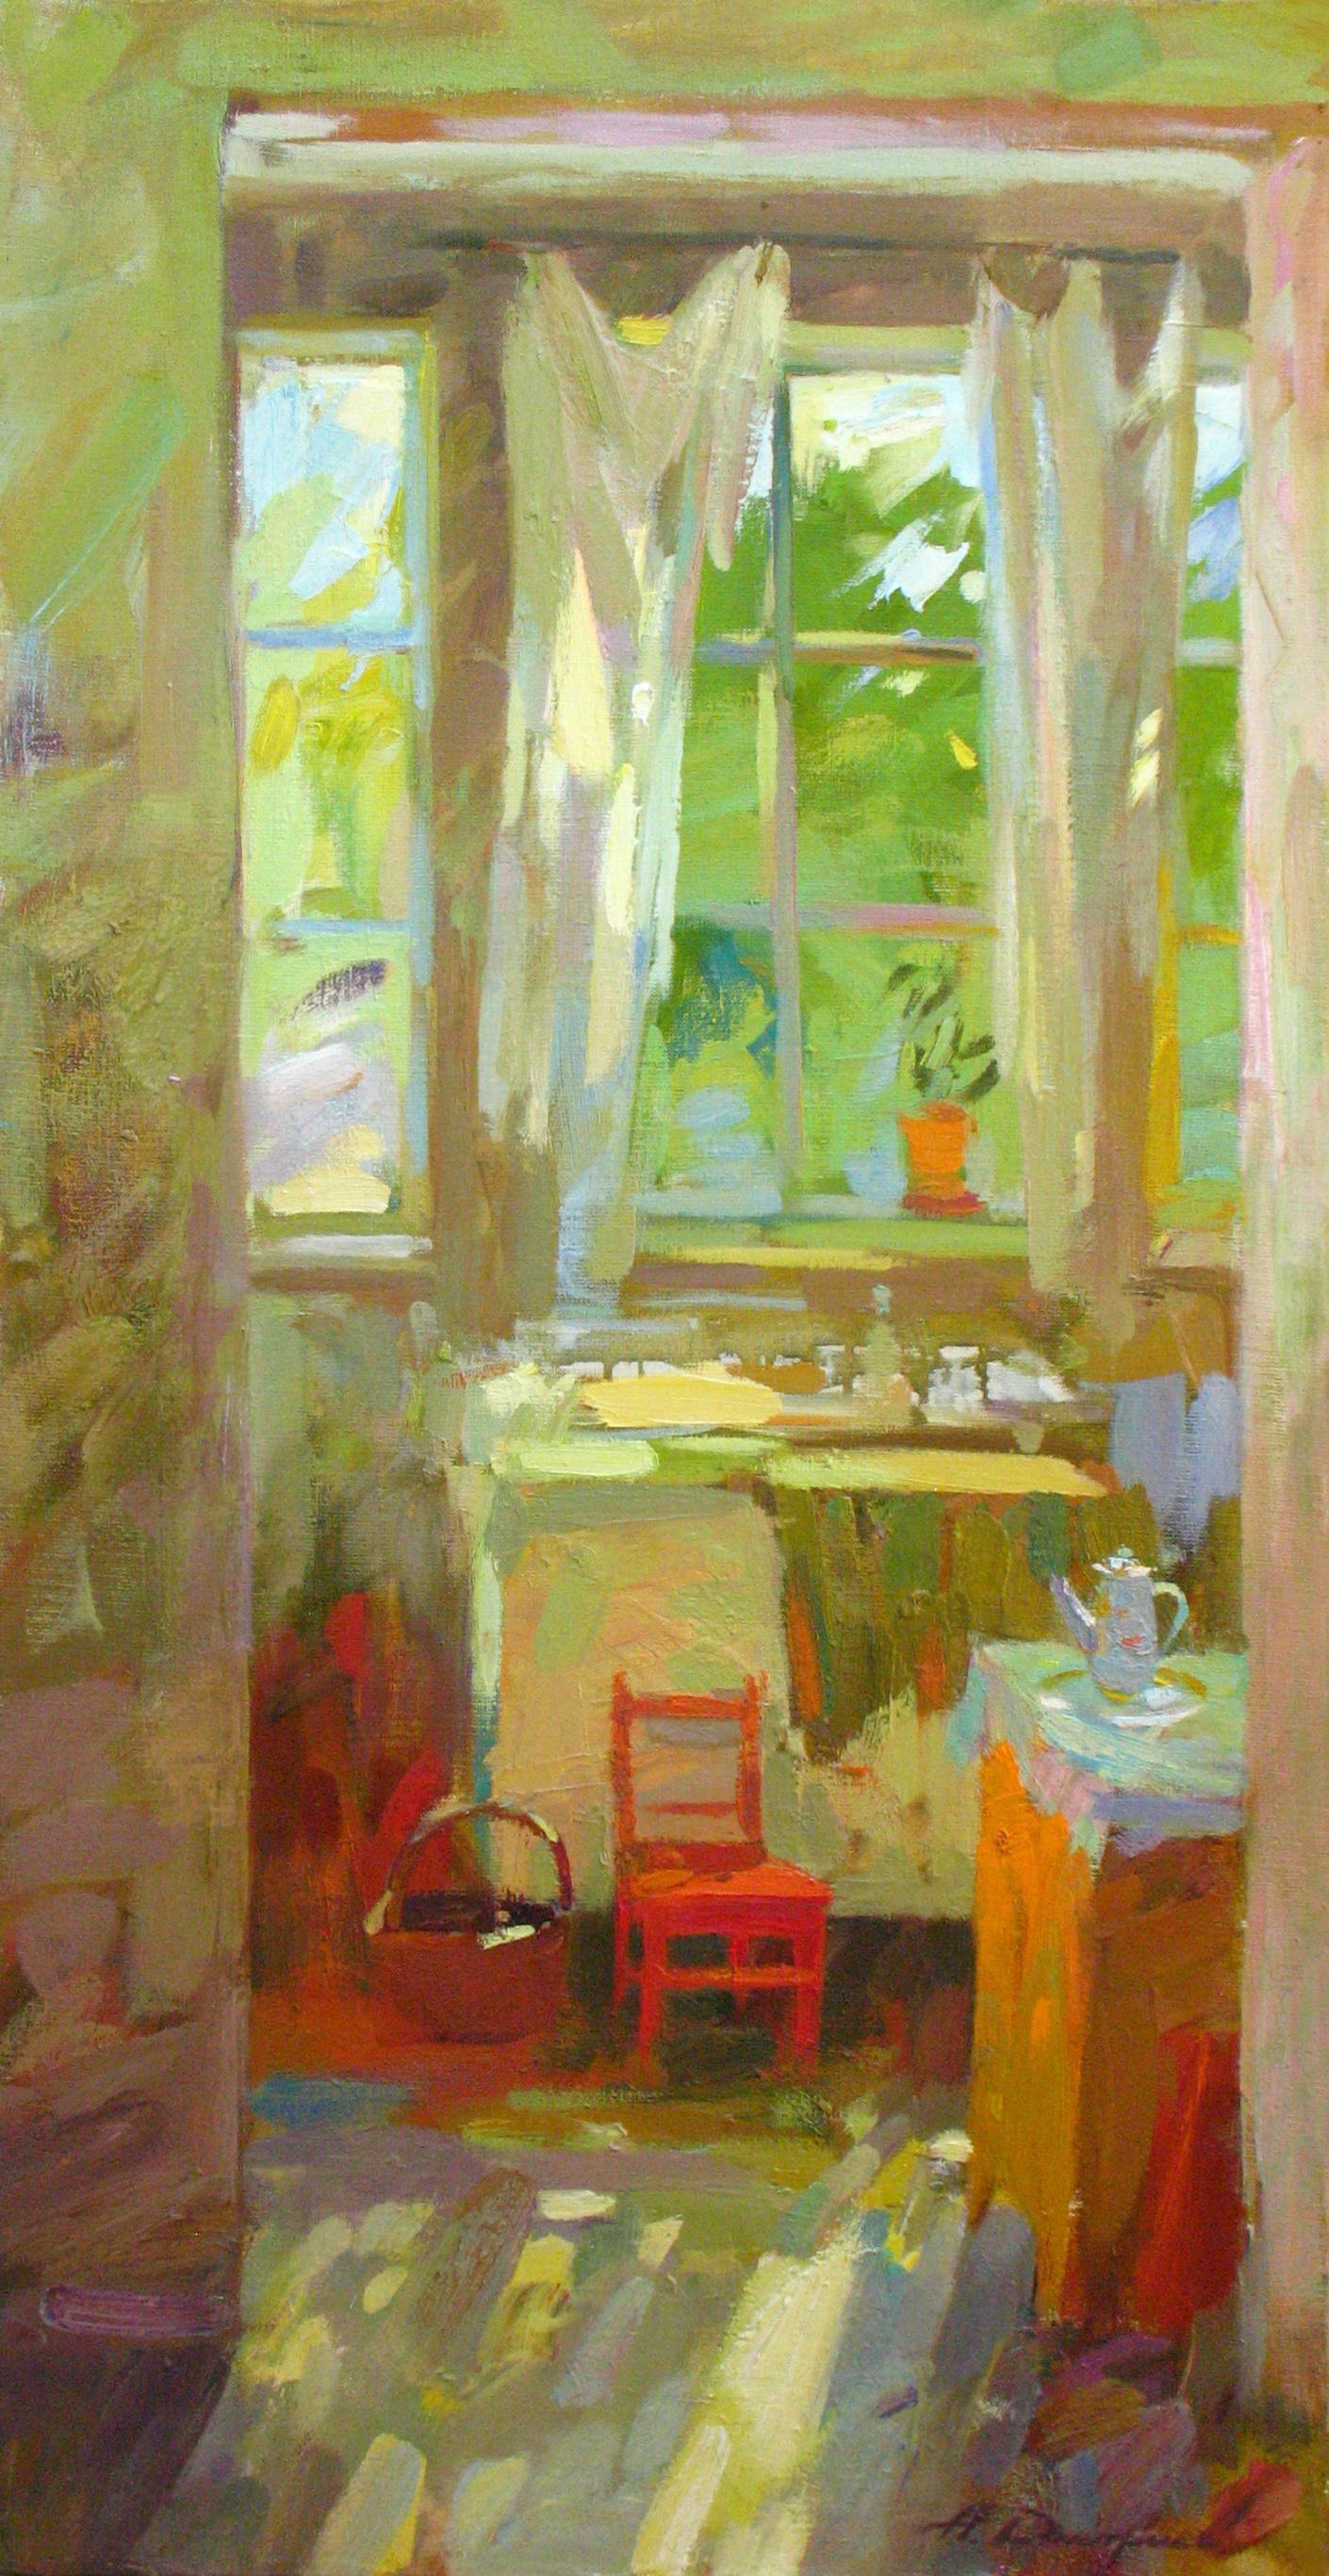 Interior Painting Dmitriev Alexey Olegovich - Peinture à l'huile sur toile - Paysage du matin ensoleillé - Couleurs vert, jaune, orange, bleu et rouge